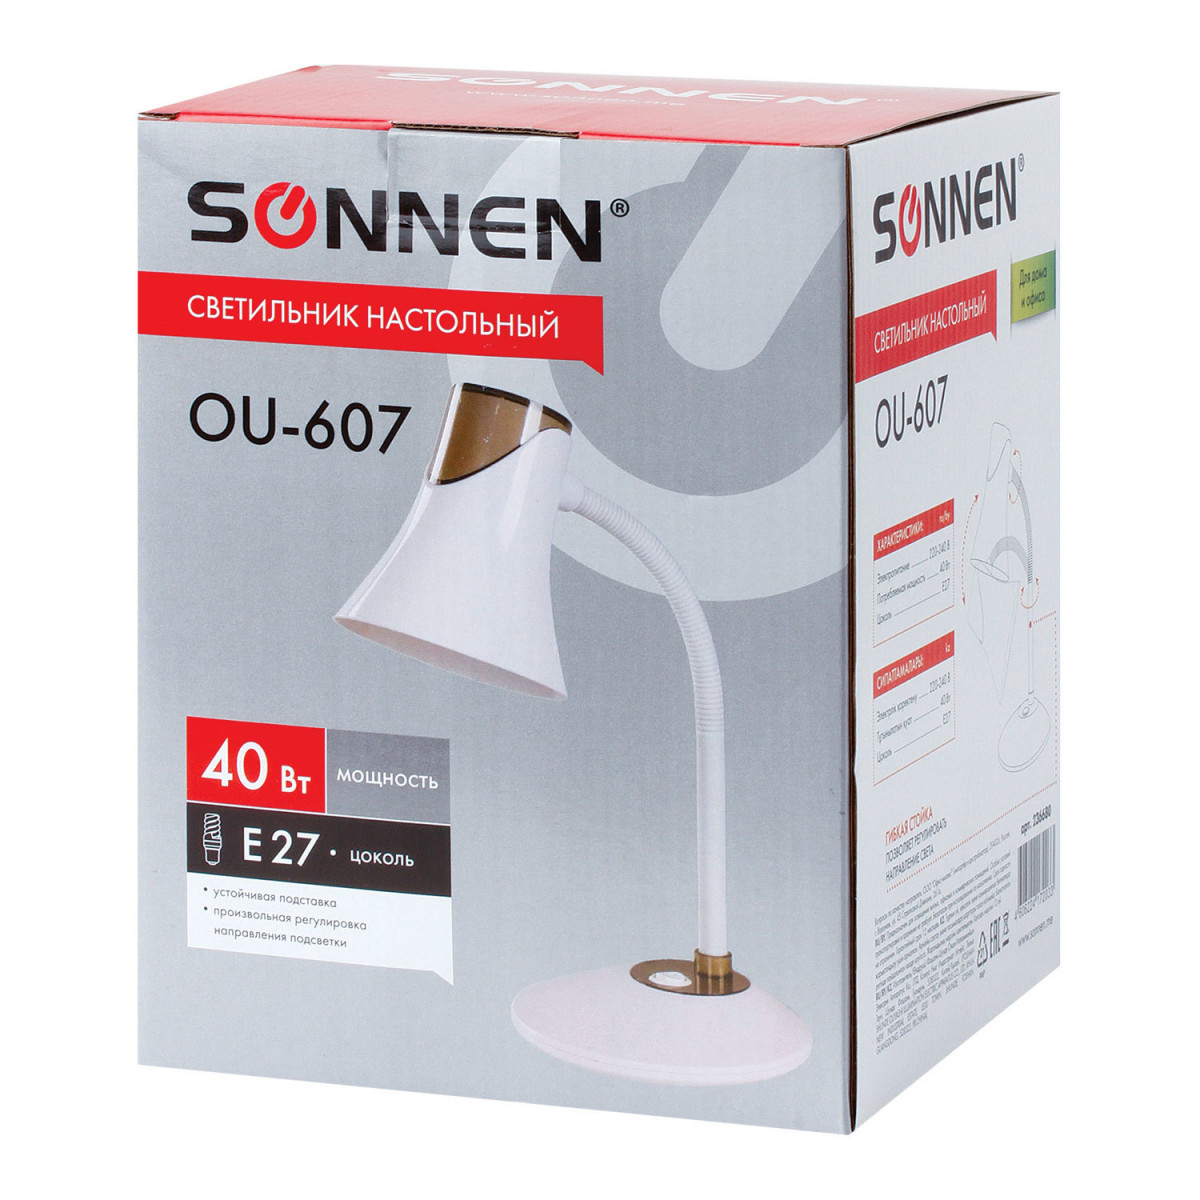 Светильник настольный SONNEN OU-607, на подставке, цоколь Е27, белый/коричневый, 236680 (арт. 236680)